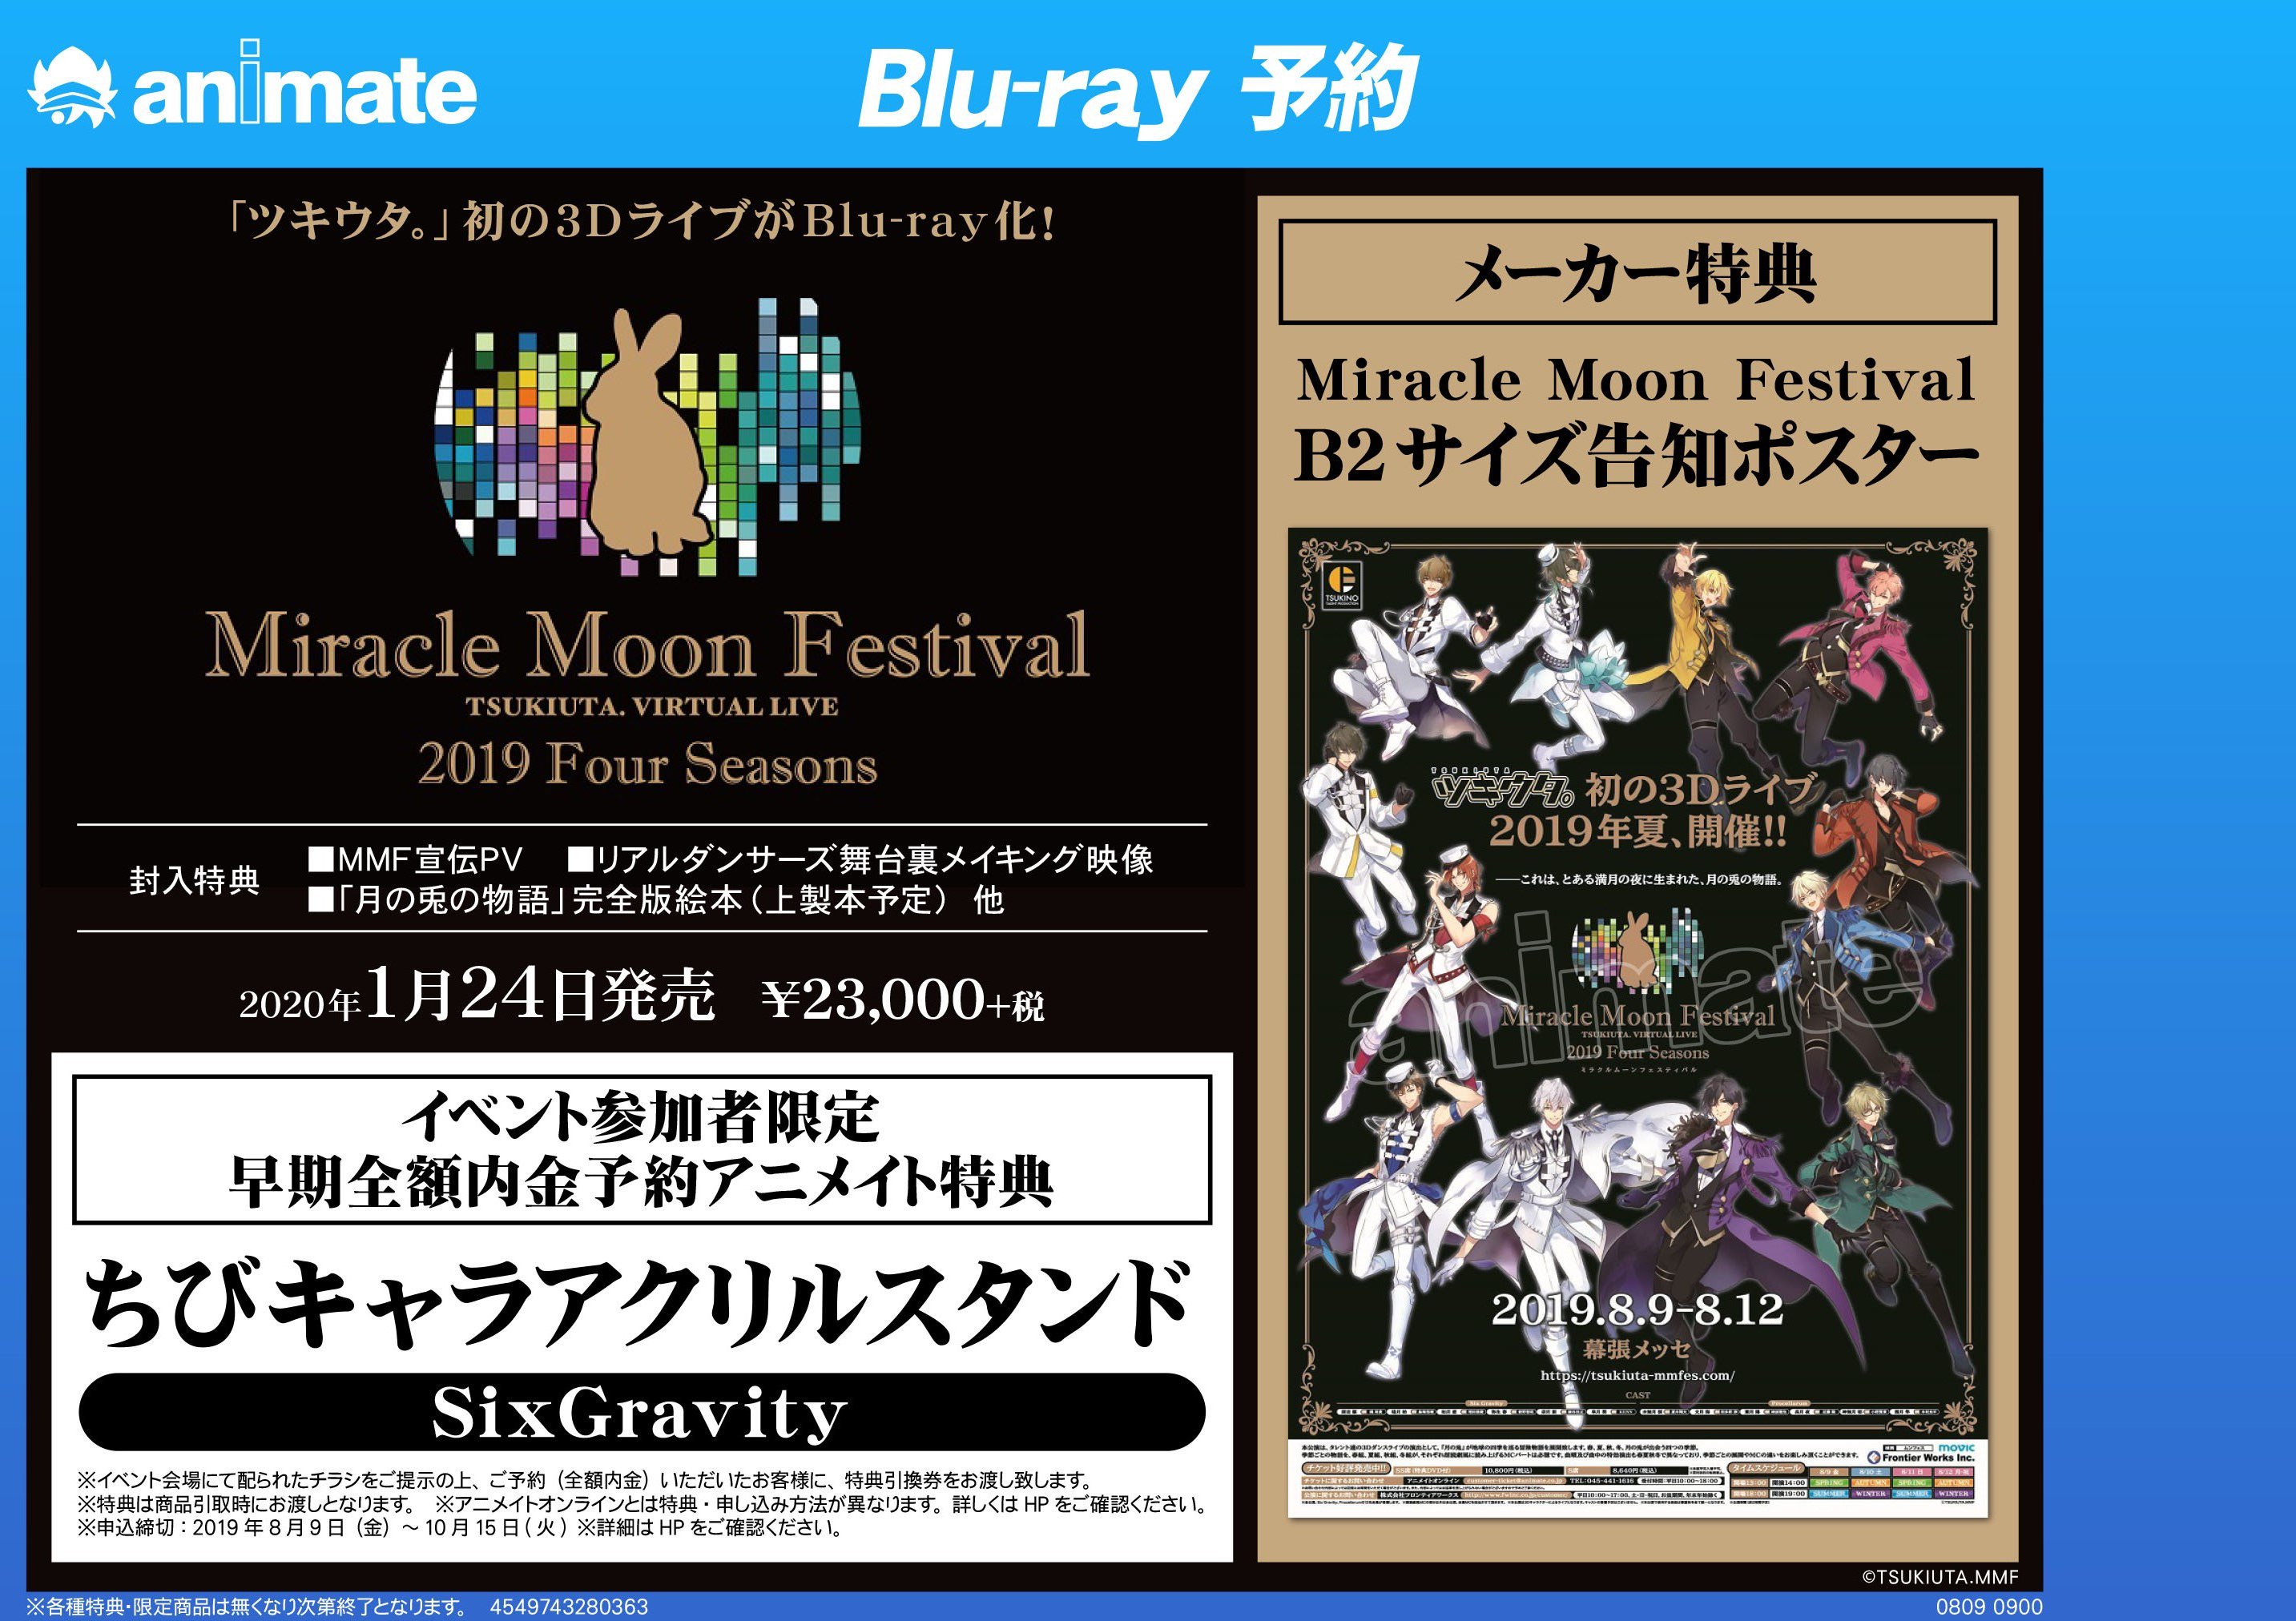 ツキウタムーンフェス Blu-ray Miracle Moon Festival-